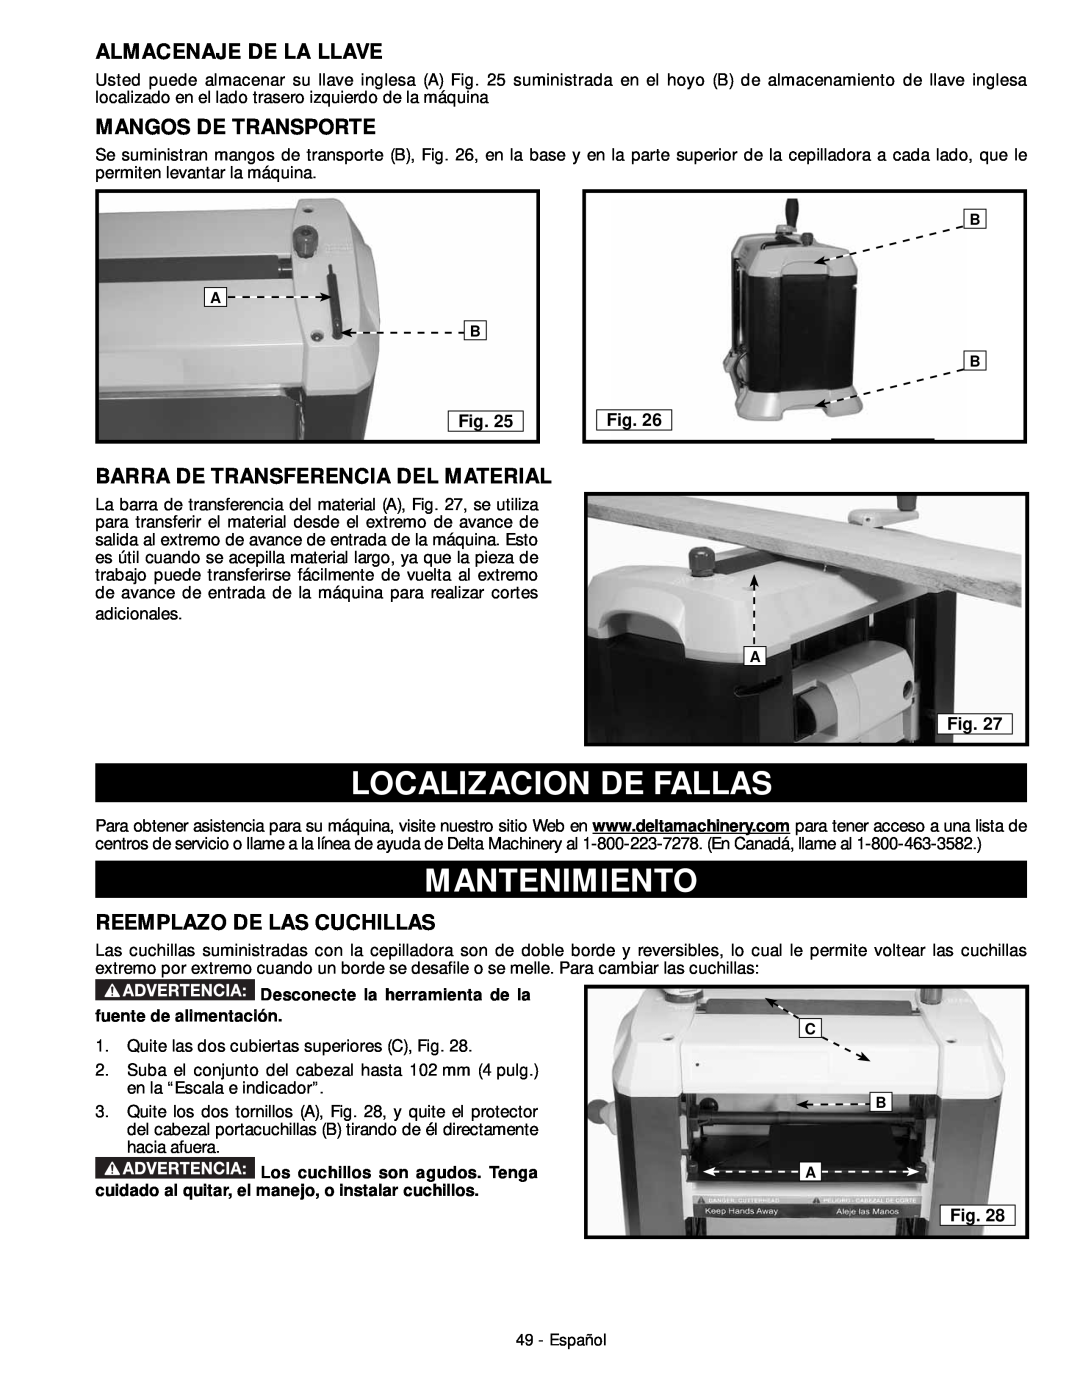 DeWalt 18657 instruction manual Localizacion De Fallas, Mantenimiento, Almacenaje De La Llave, Mangos De Transporte 